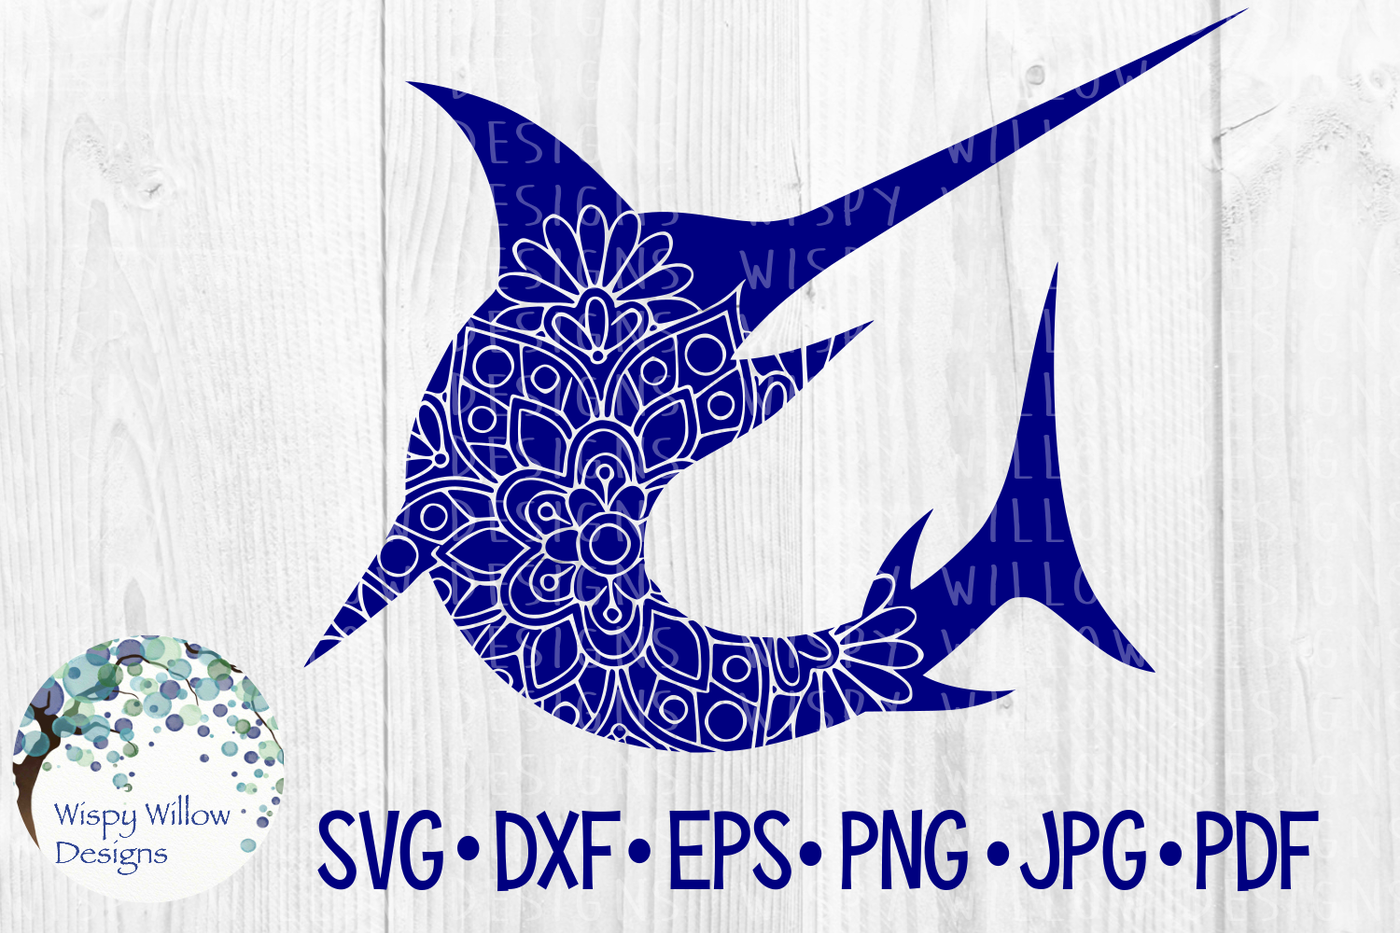 Download Swordfish, Floral Animal Mandala SVG/DXF/EPS/PNG/JPG/PDF ...